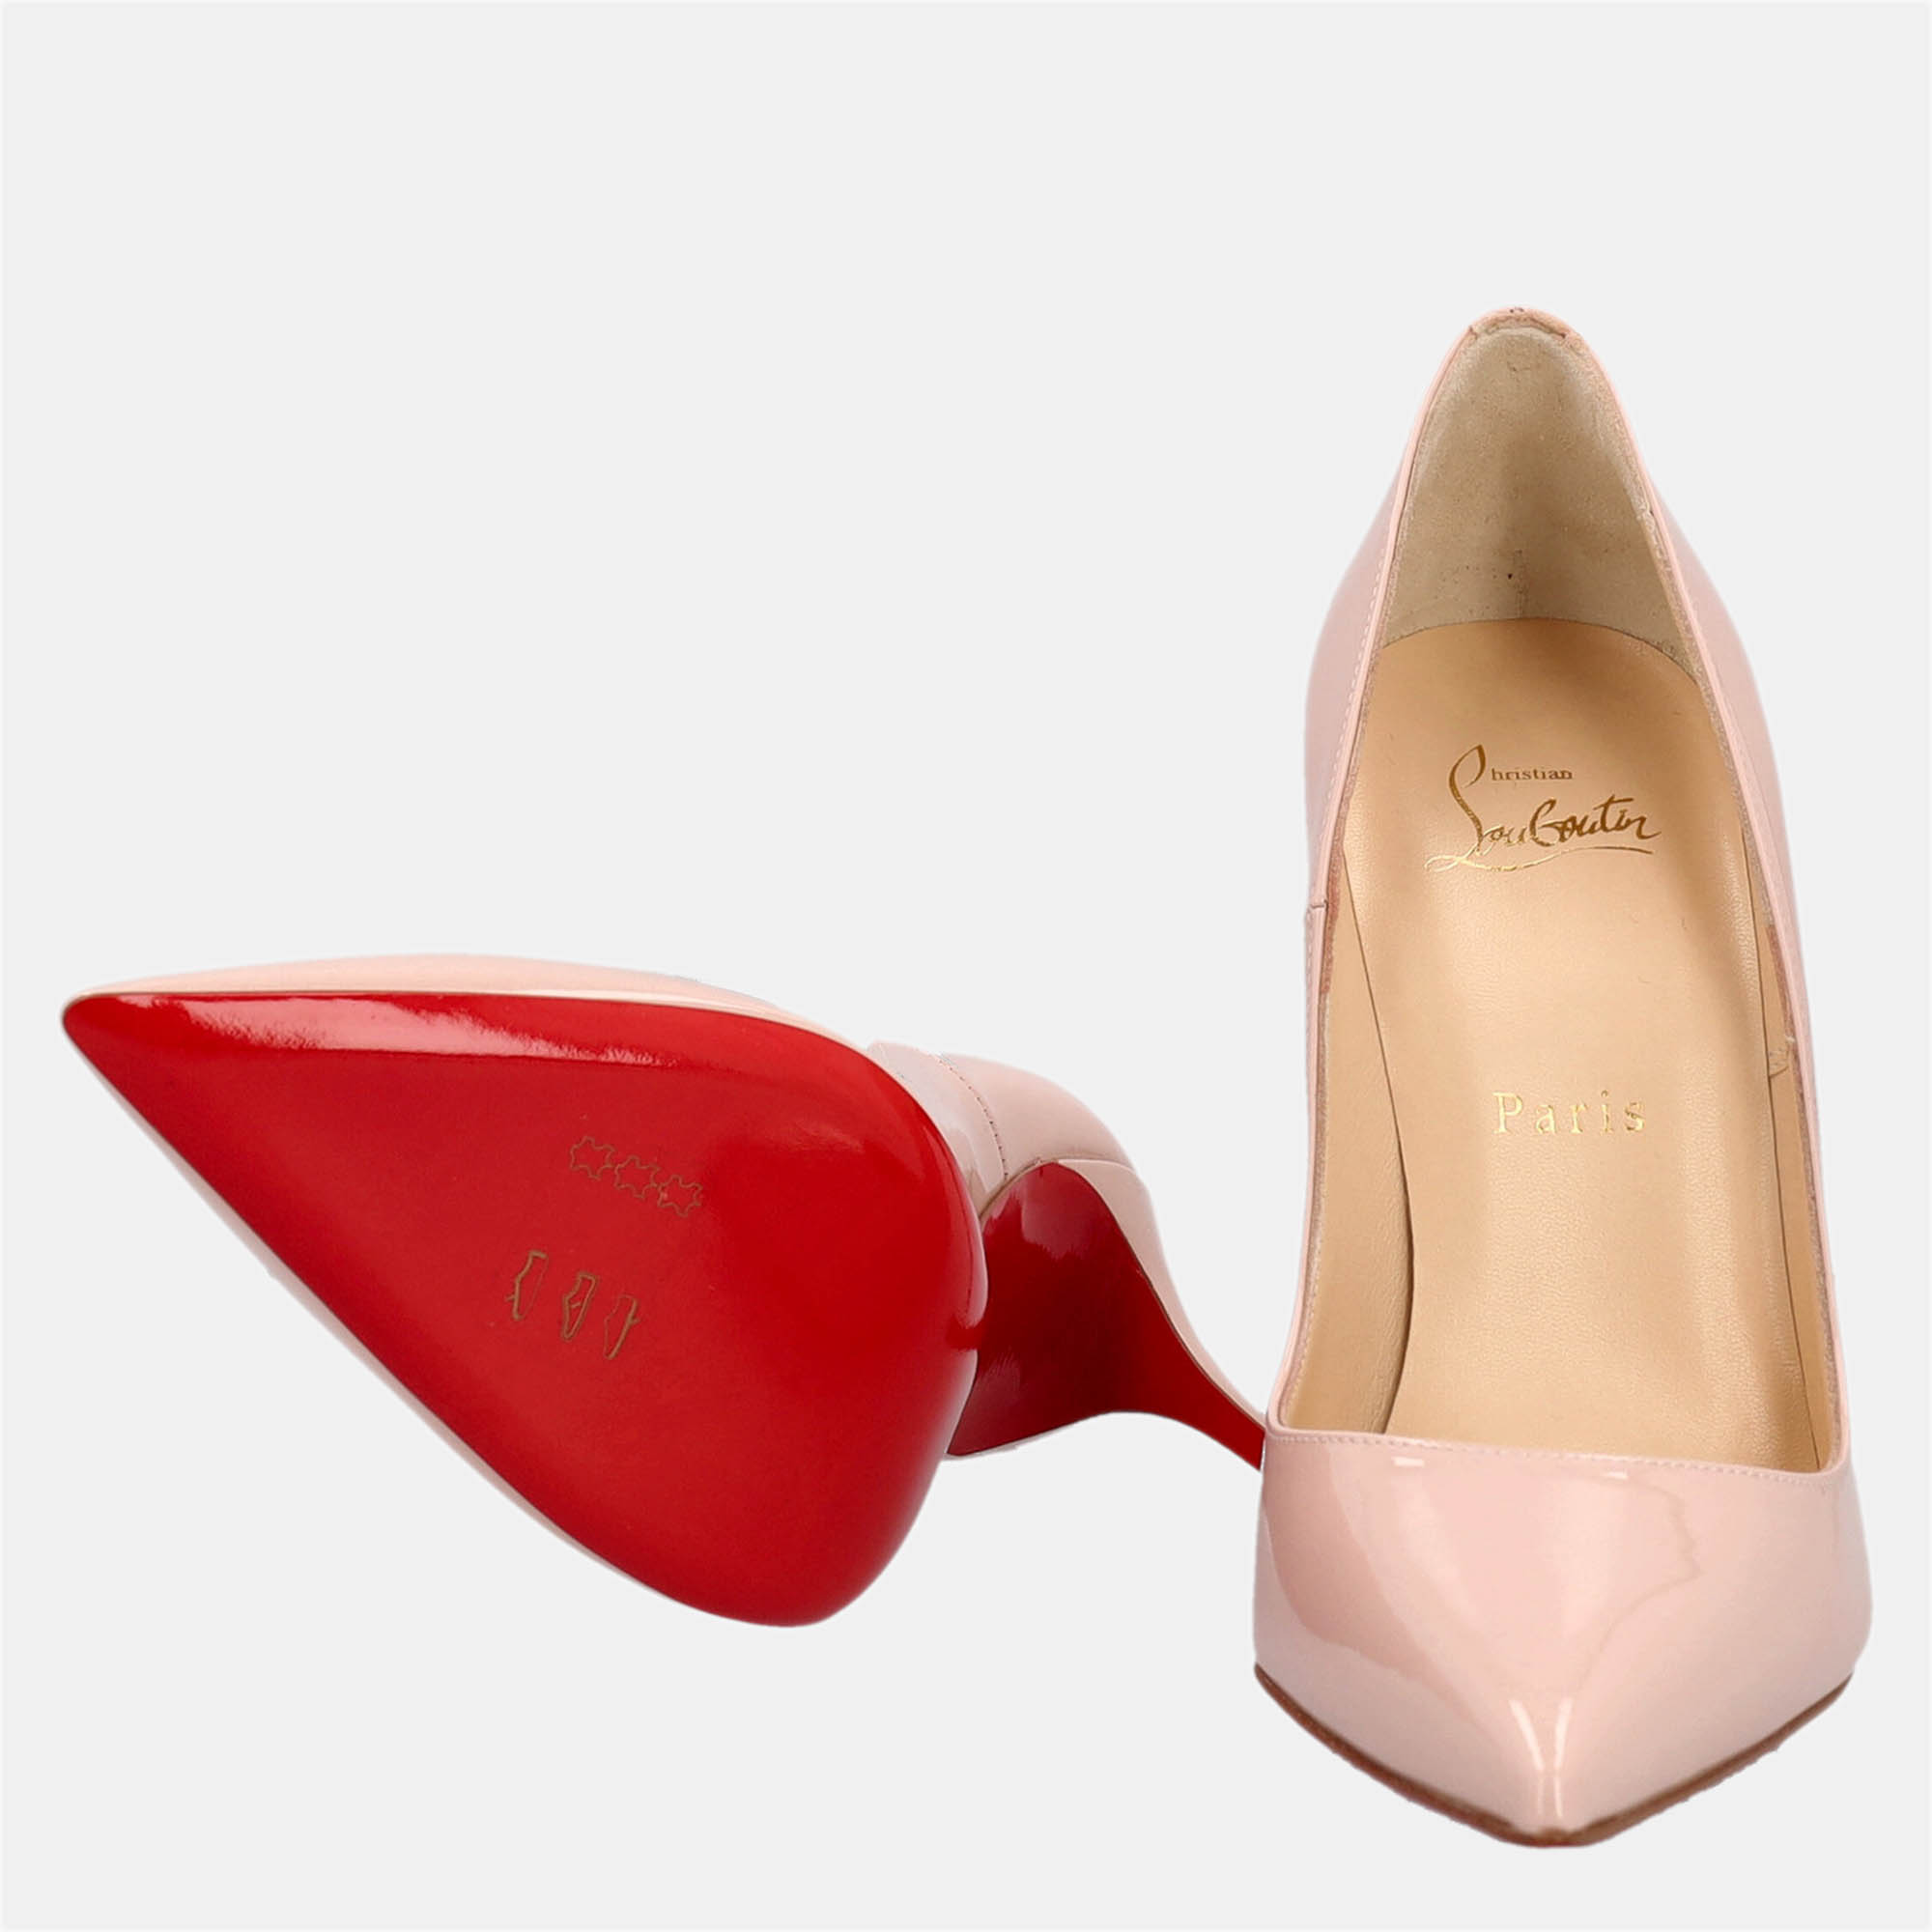 Christian Louboutin  Women's Leather Heels - Pink - EU 38